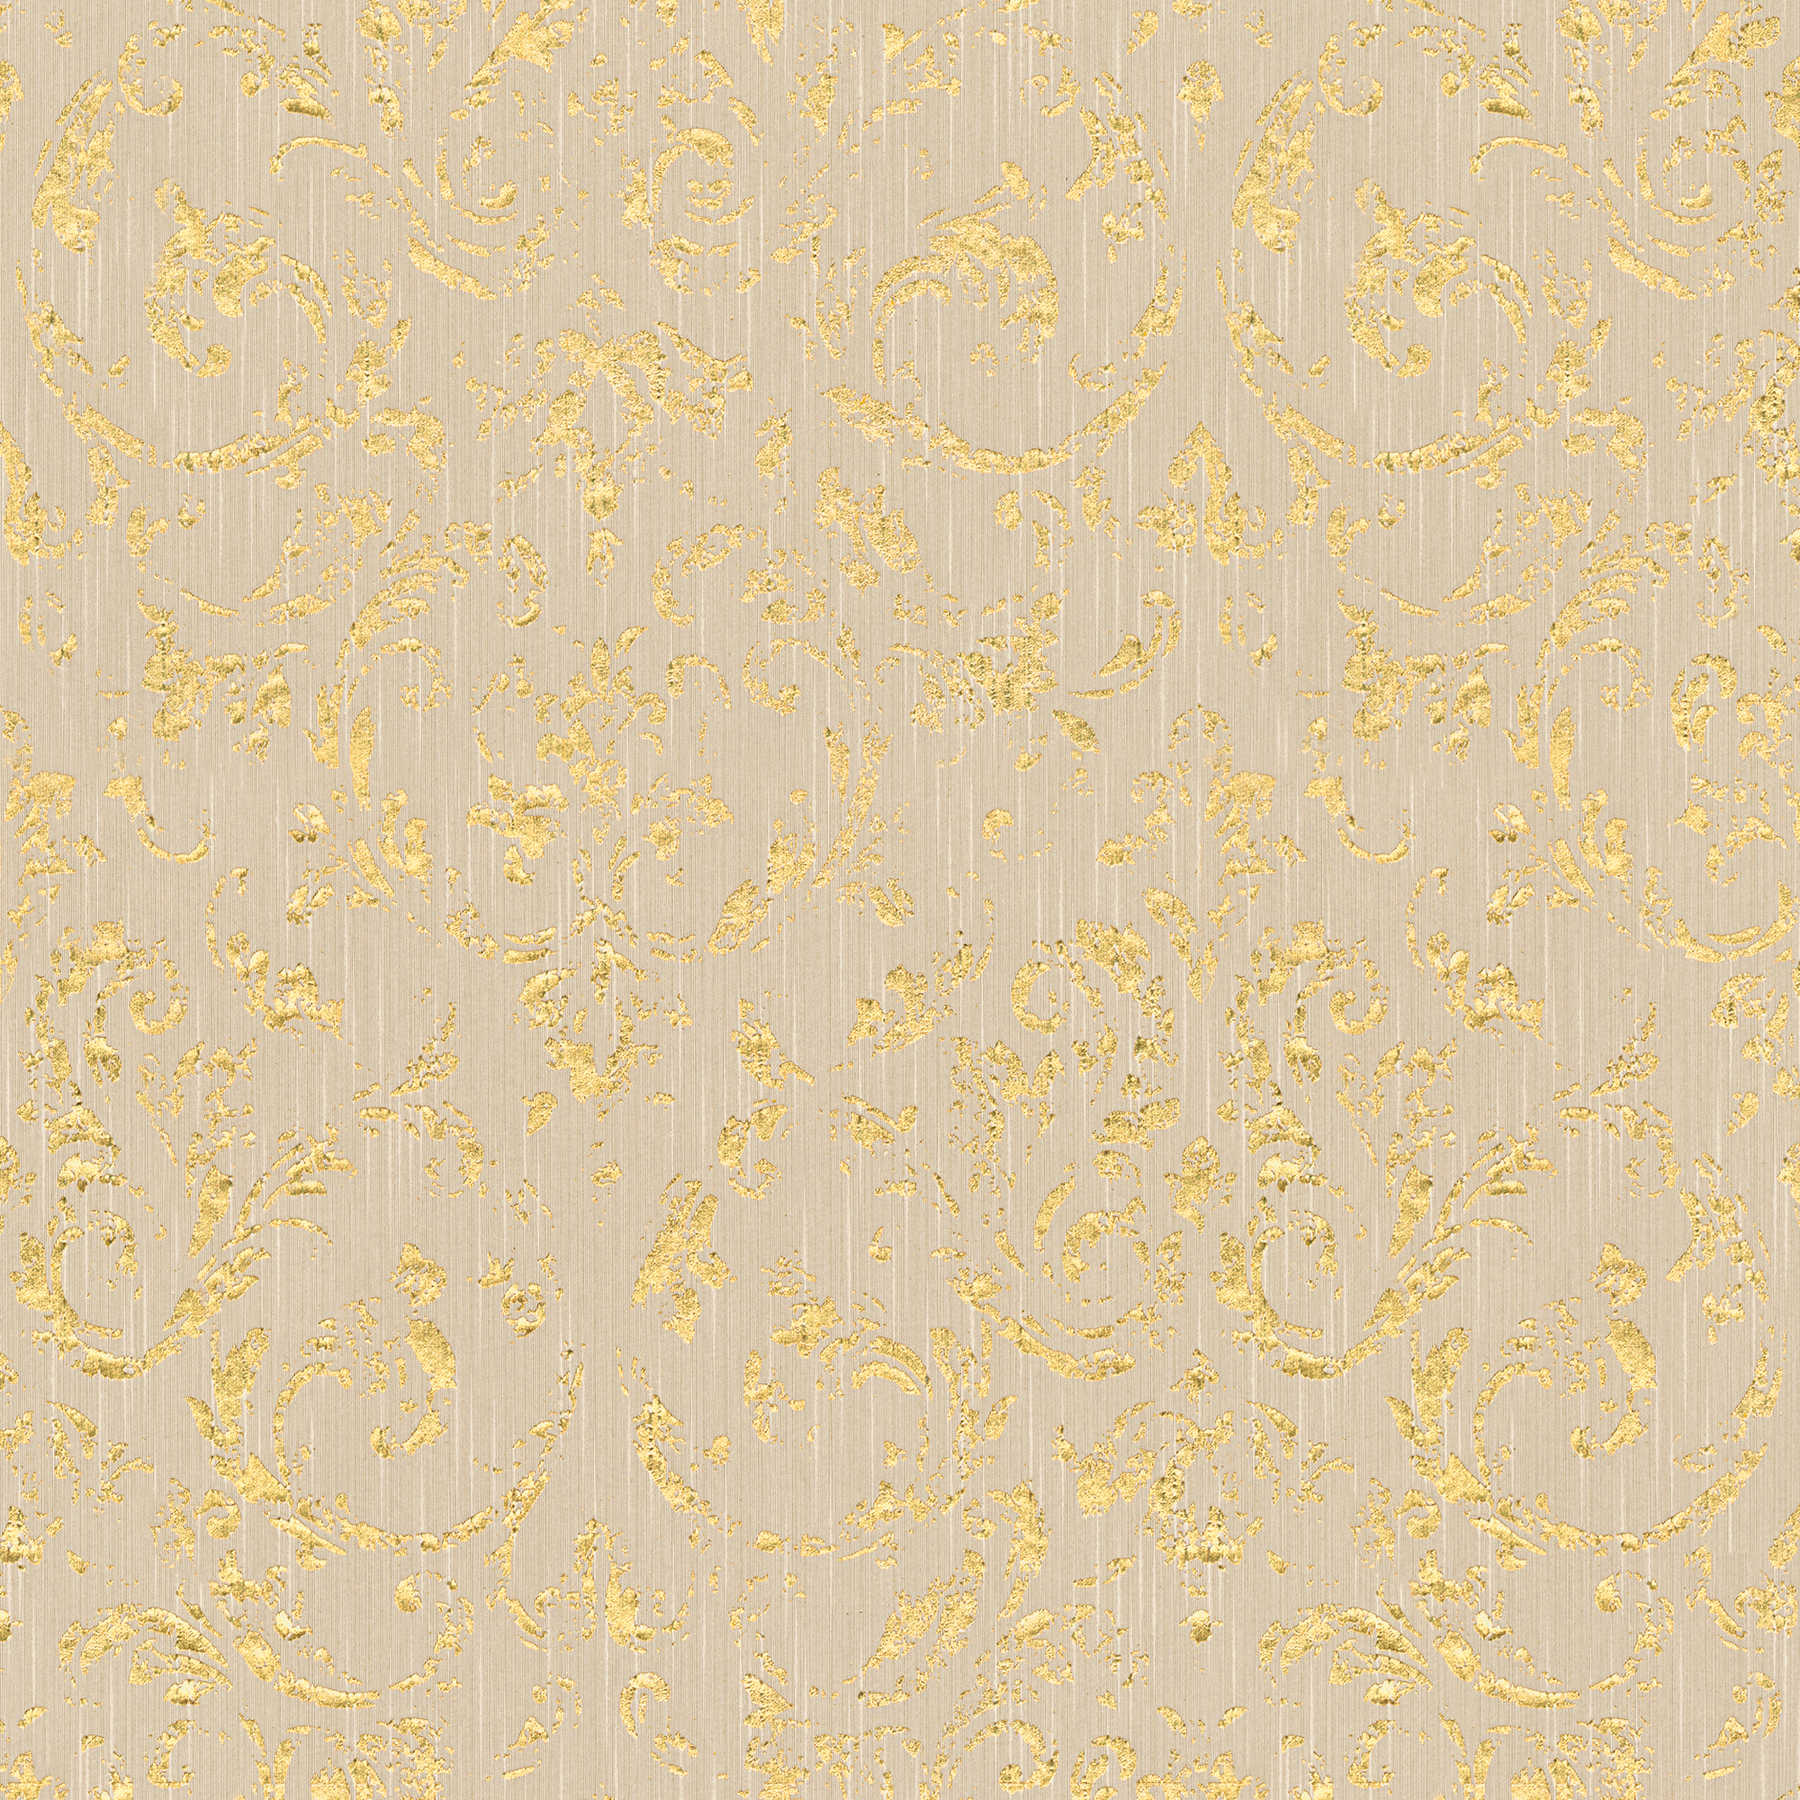 Sierbehang in used look met metallic effect - beige, goud
